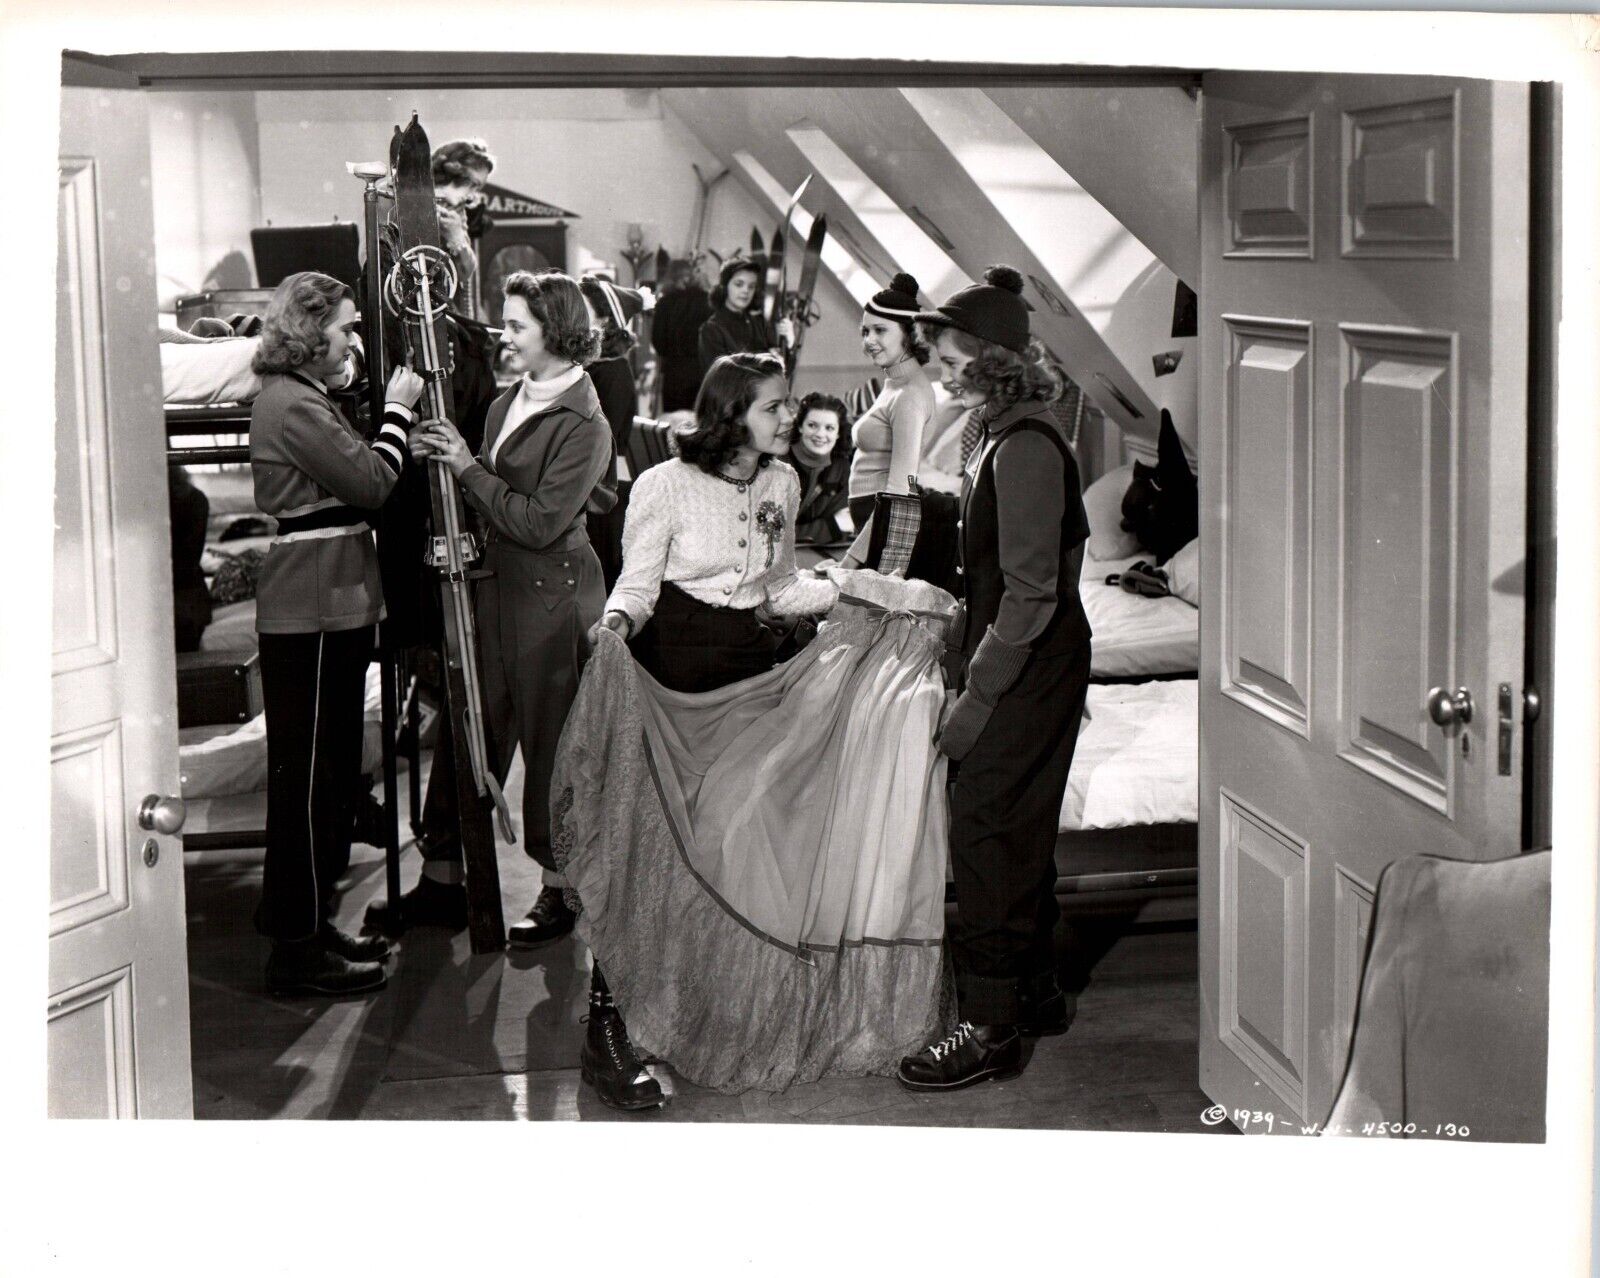 Joan Leslie + Helen Parrish (1940s) ❤ Original Vintage Hollywood Photo K 359